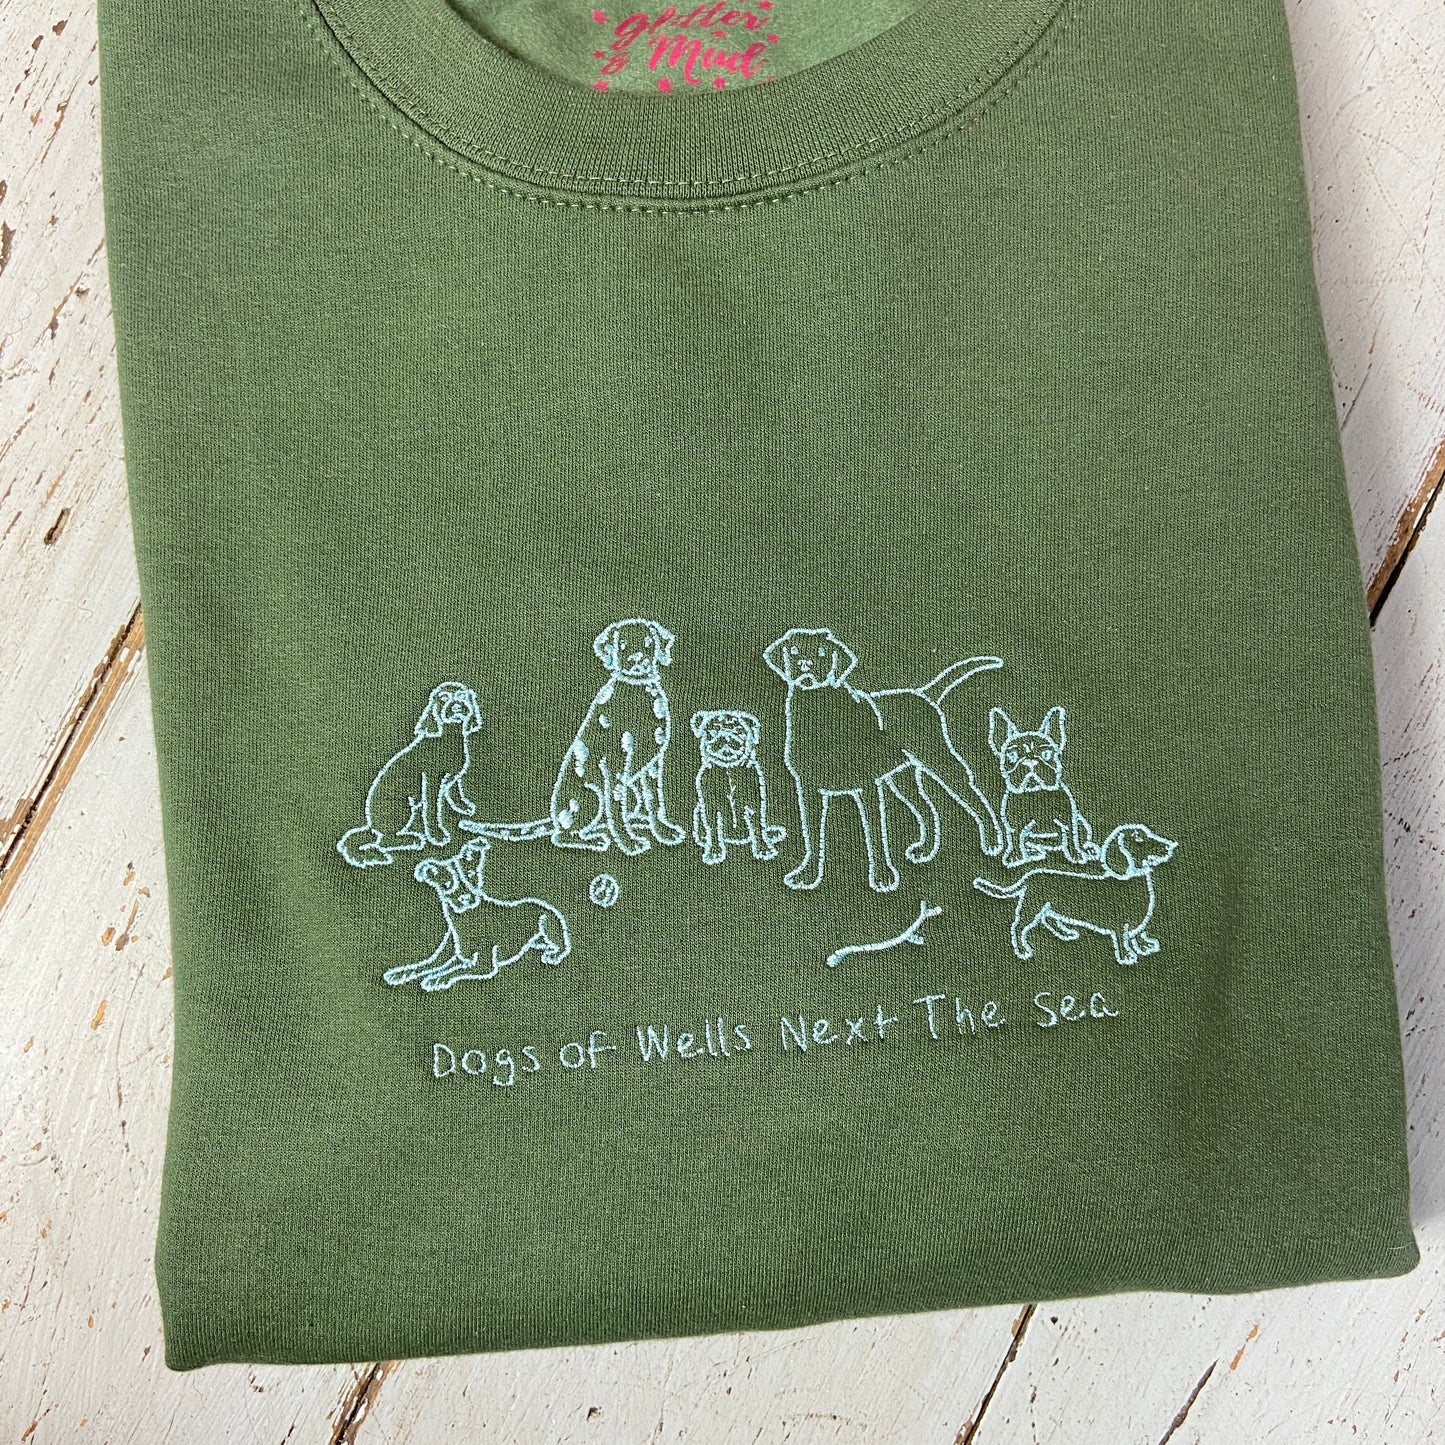 Dogs of Wells Sweatshirt